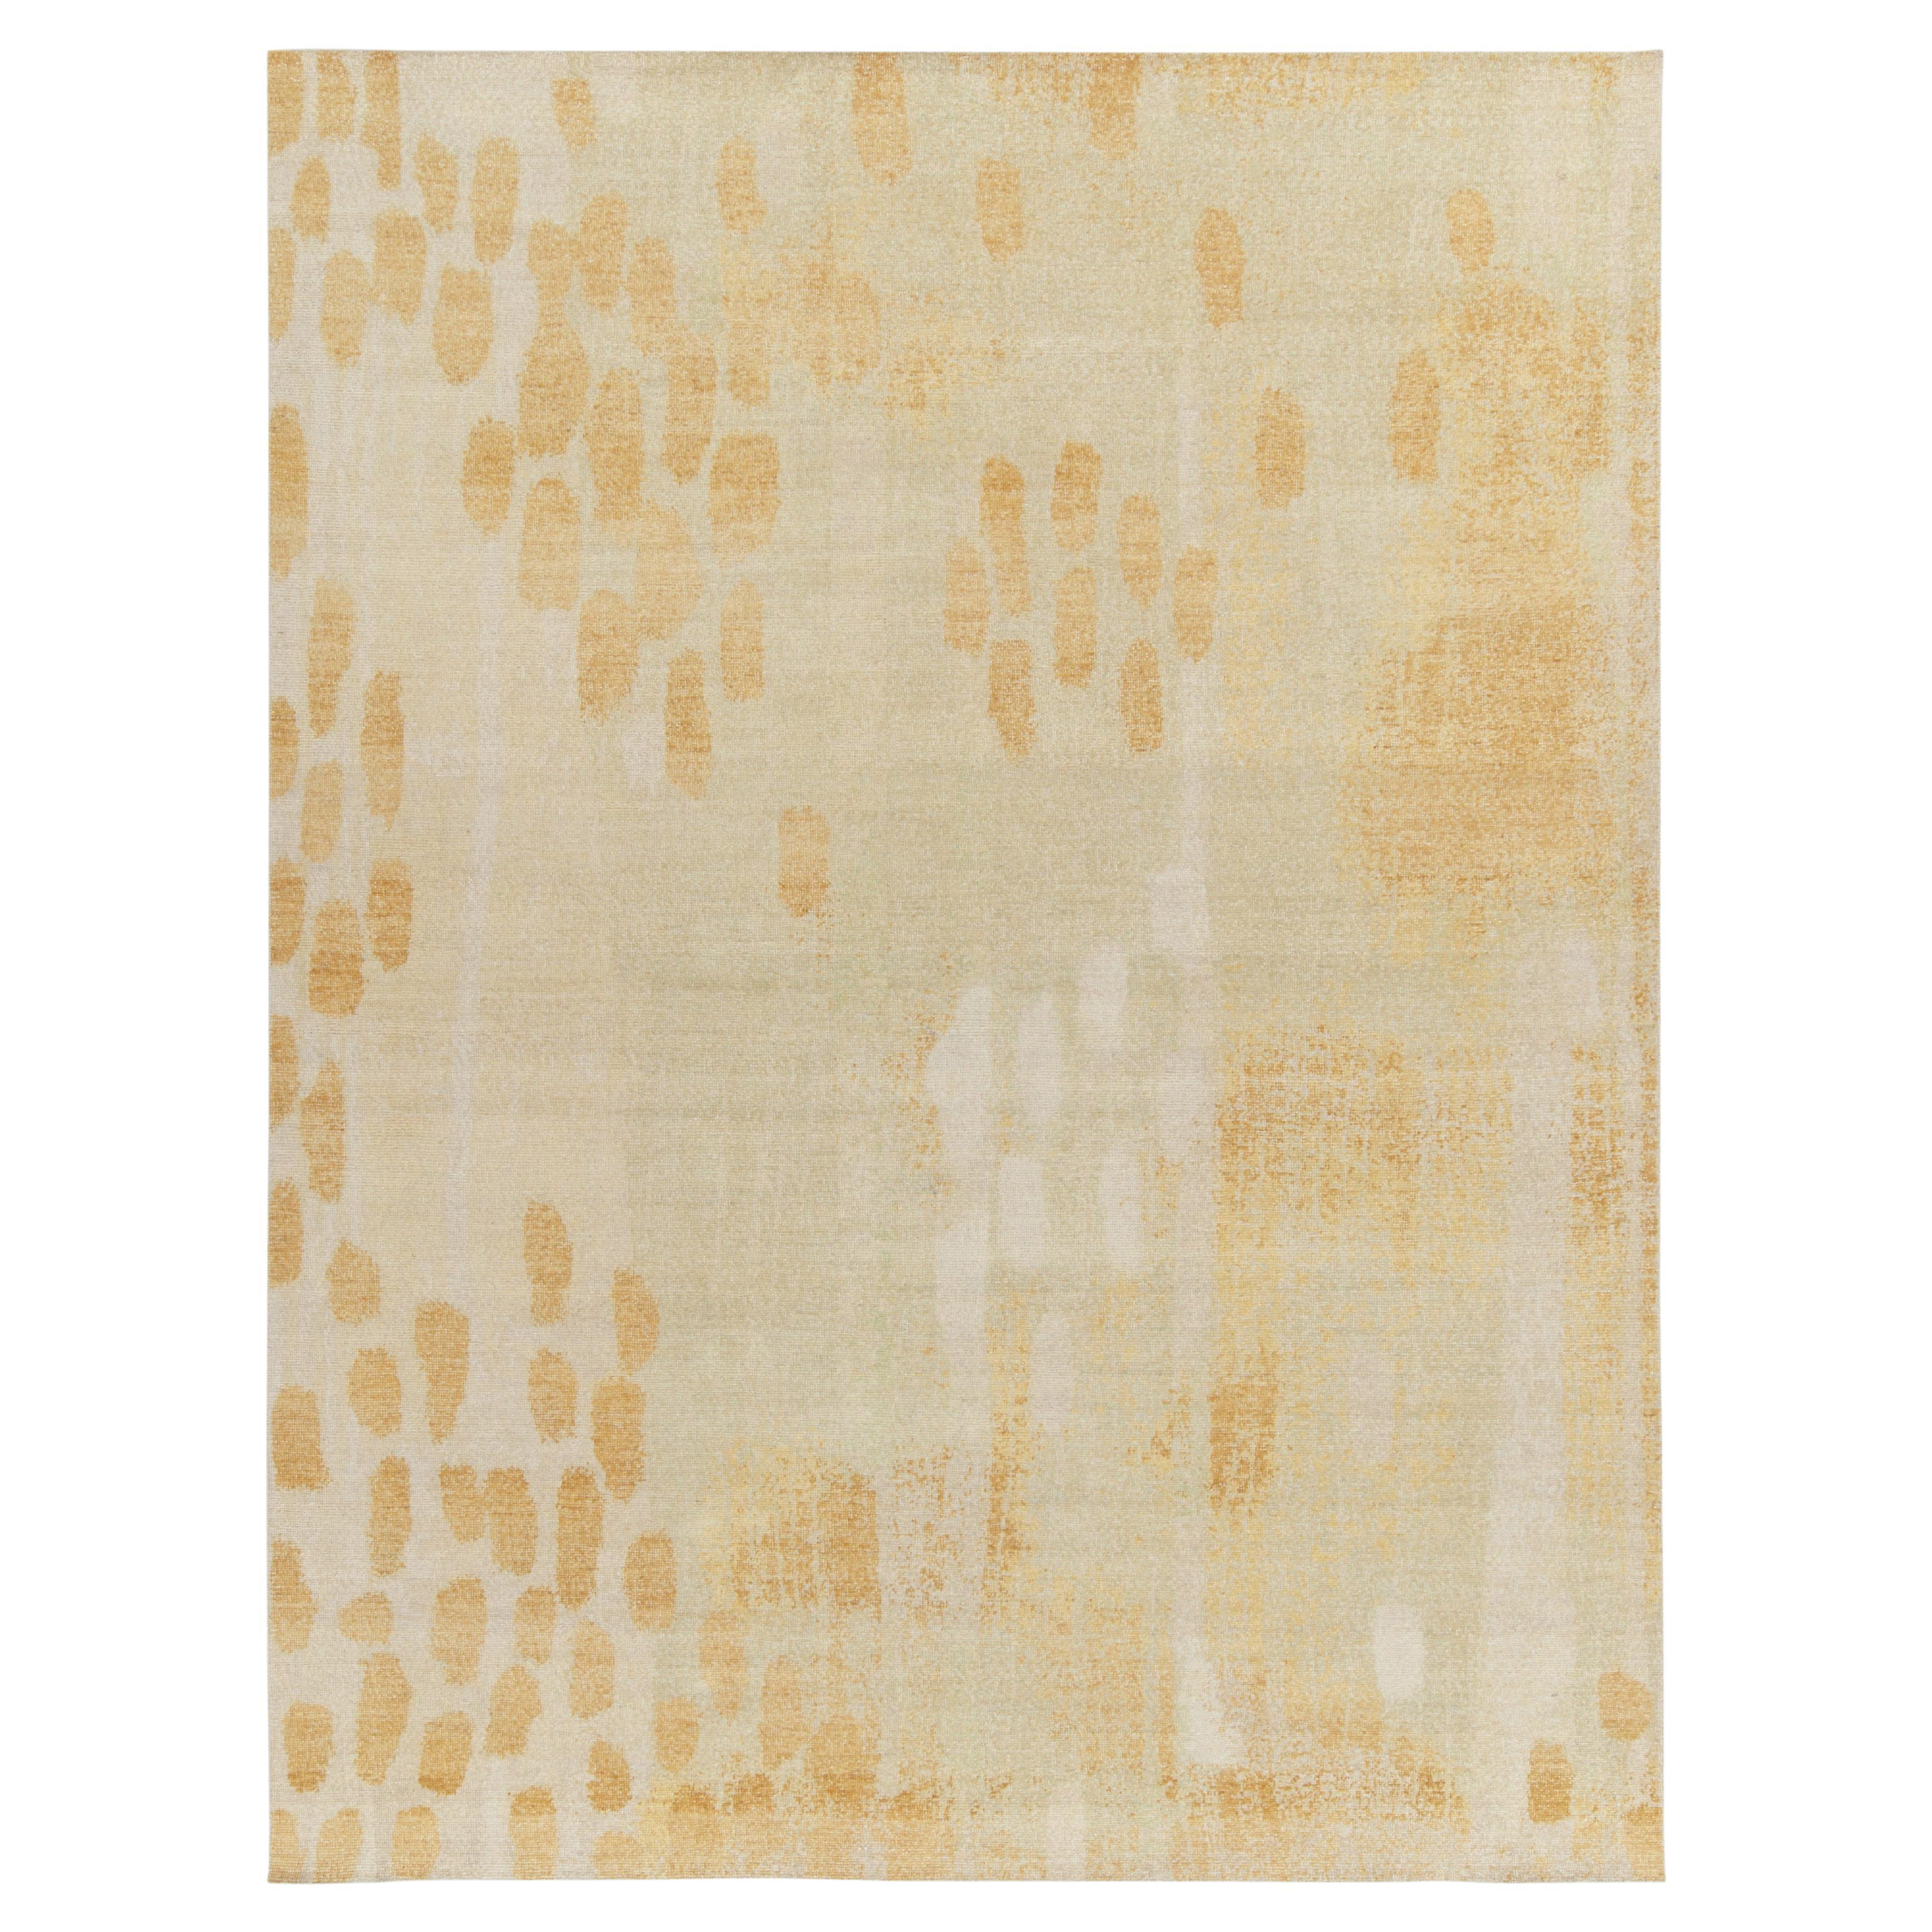 Moderner Teppich im Distressed-Stil von Teppich & Kelim in Creme, Gold und Weiß mit Punktmuster